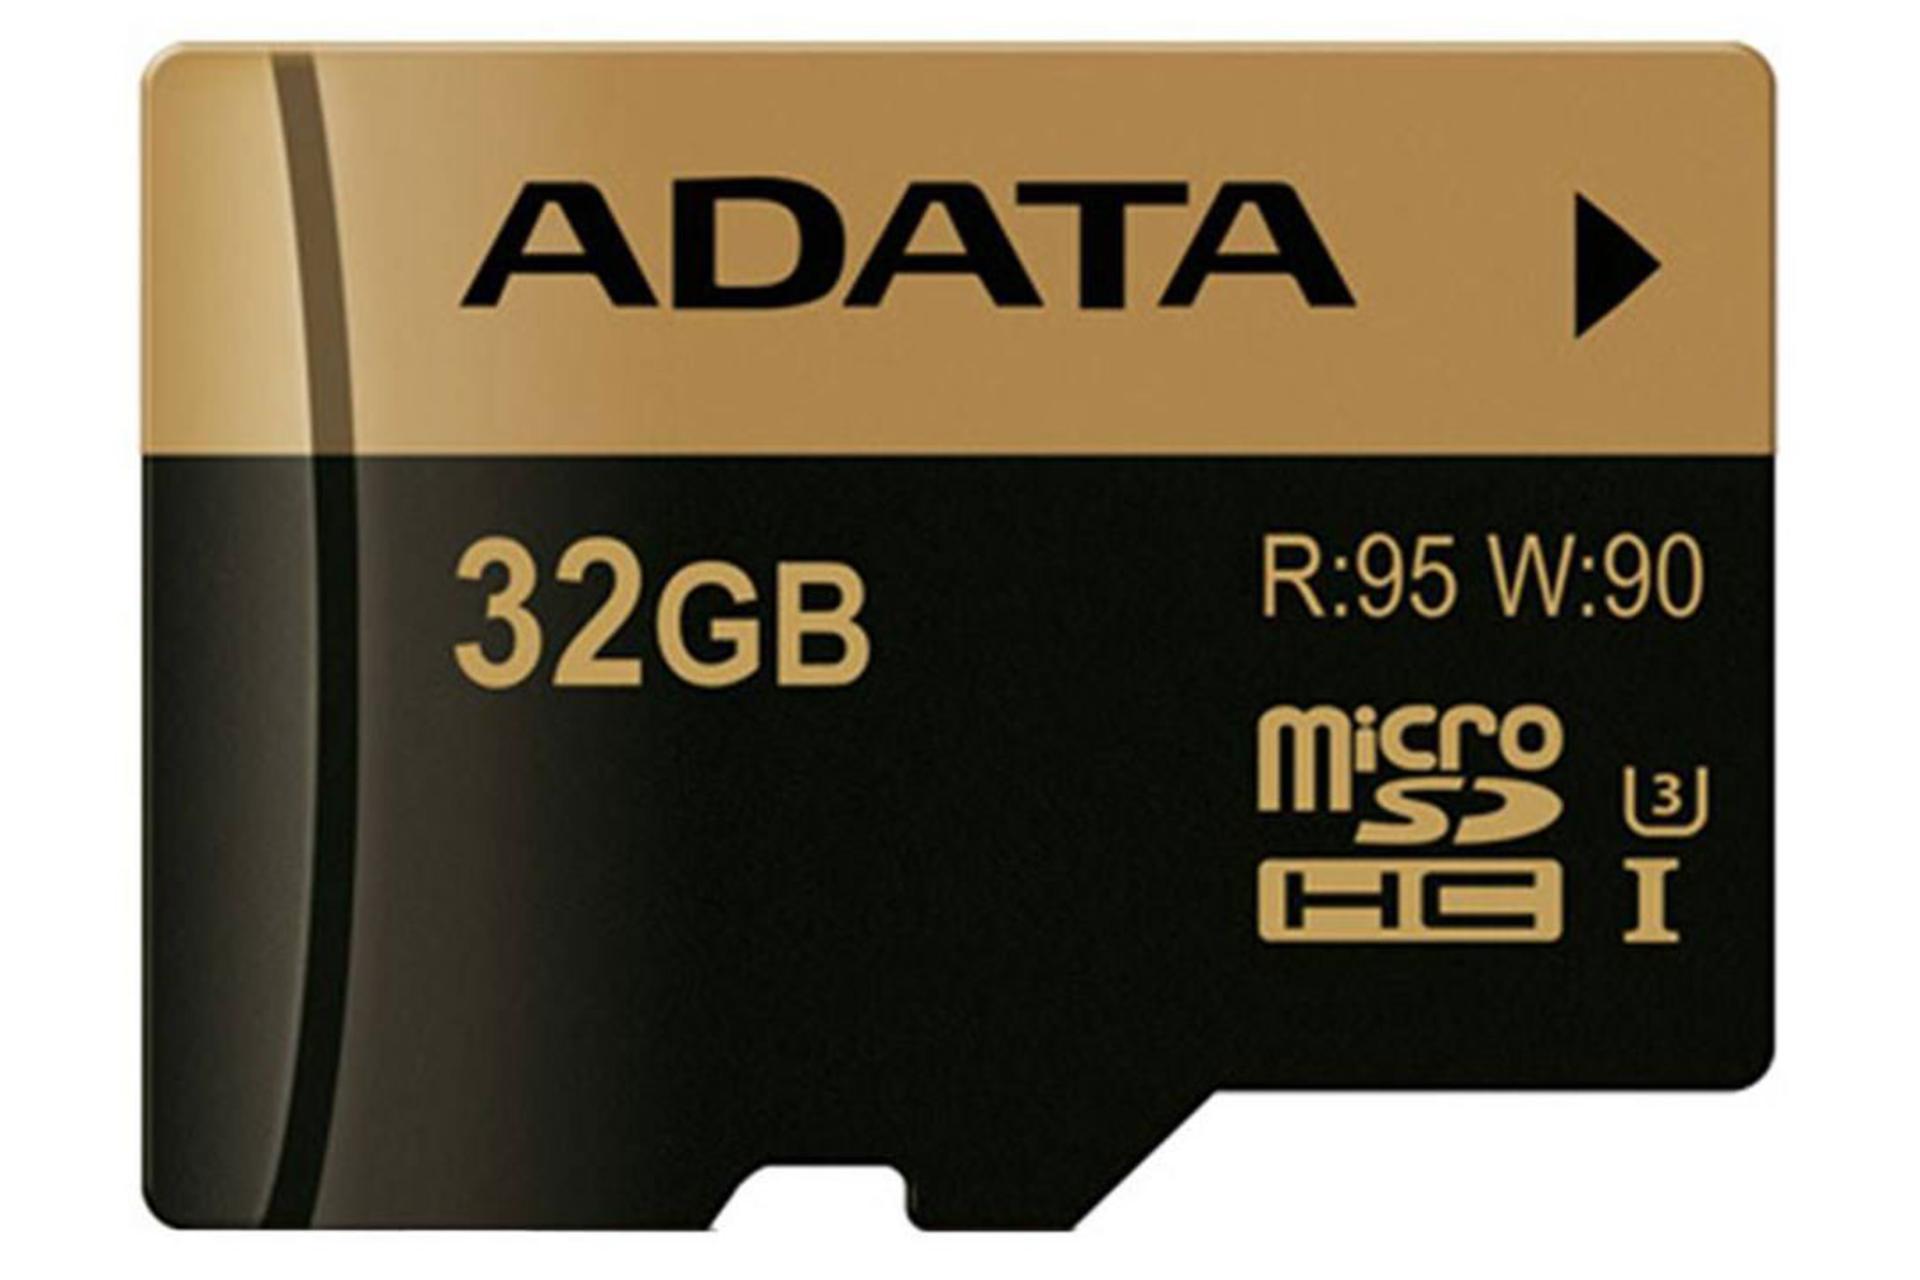 مرجع متخصصين ايران ADATA XPG microSDHC Class 10 UHS-I U3 32GB